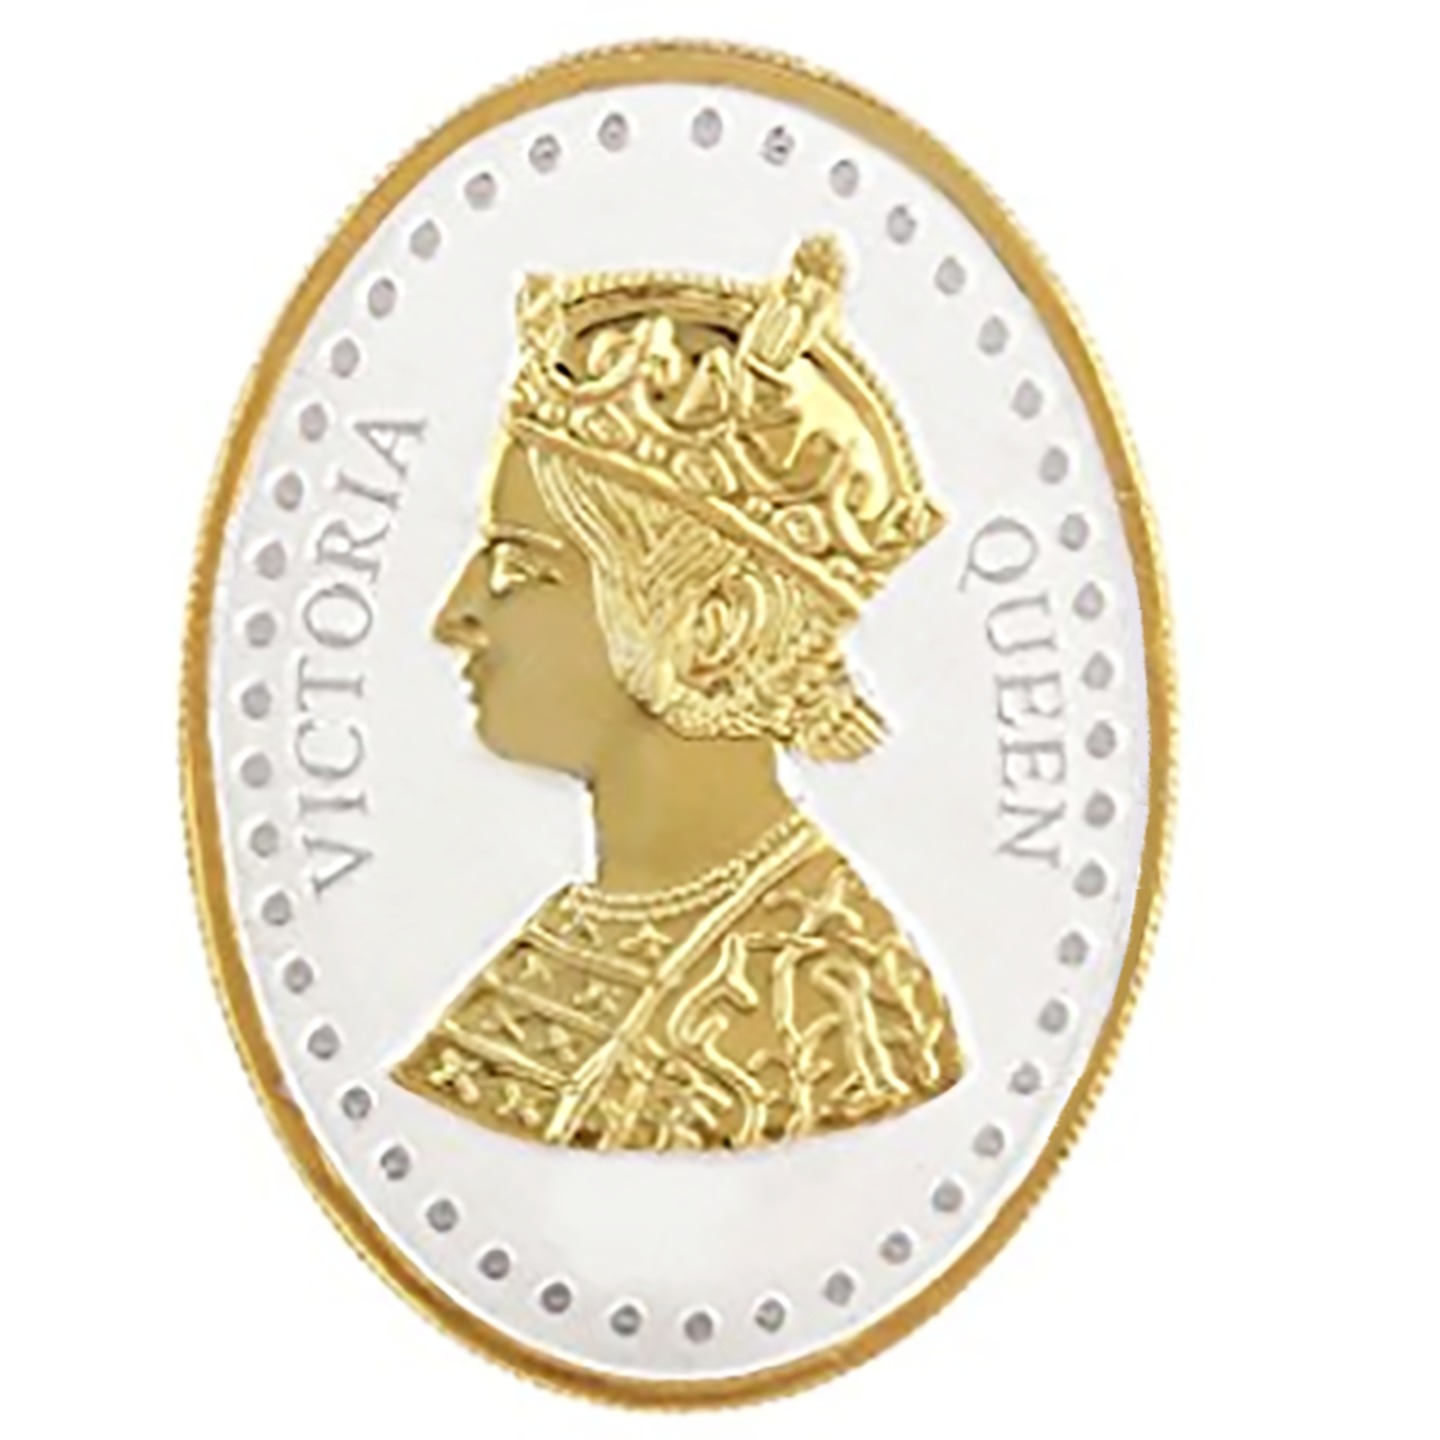 Silver Coin Queen Victoria 24 Kt Gold Plated 20 Gm 999 BIS Hallmarked